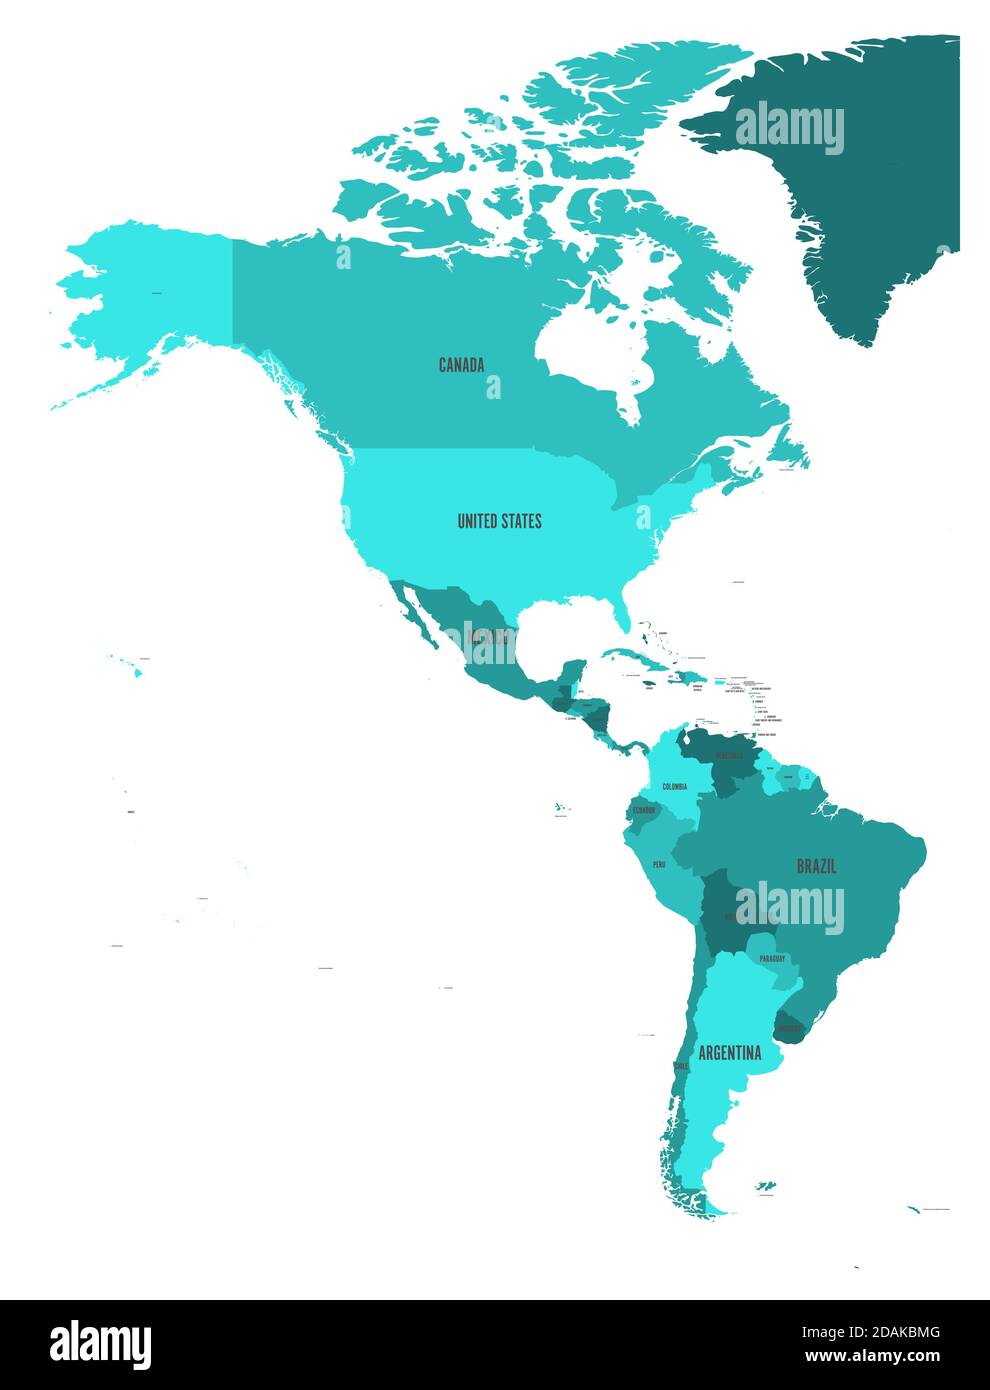 Carte politique des Amériques dans quatre nuances de bleu turquoise sur fond blanc. Amérique du Nord et du Sud avec des étiquettes de pays. Illustration simple à vecteur plat. Illustration de Vecteur